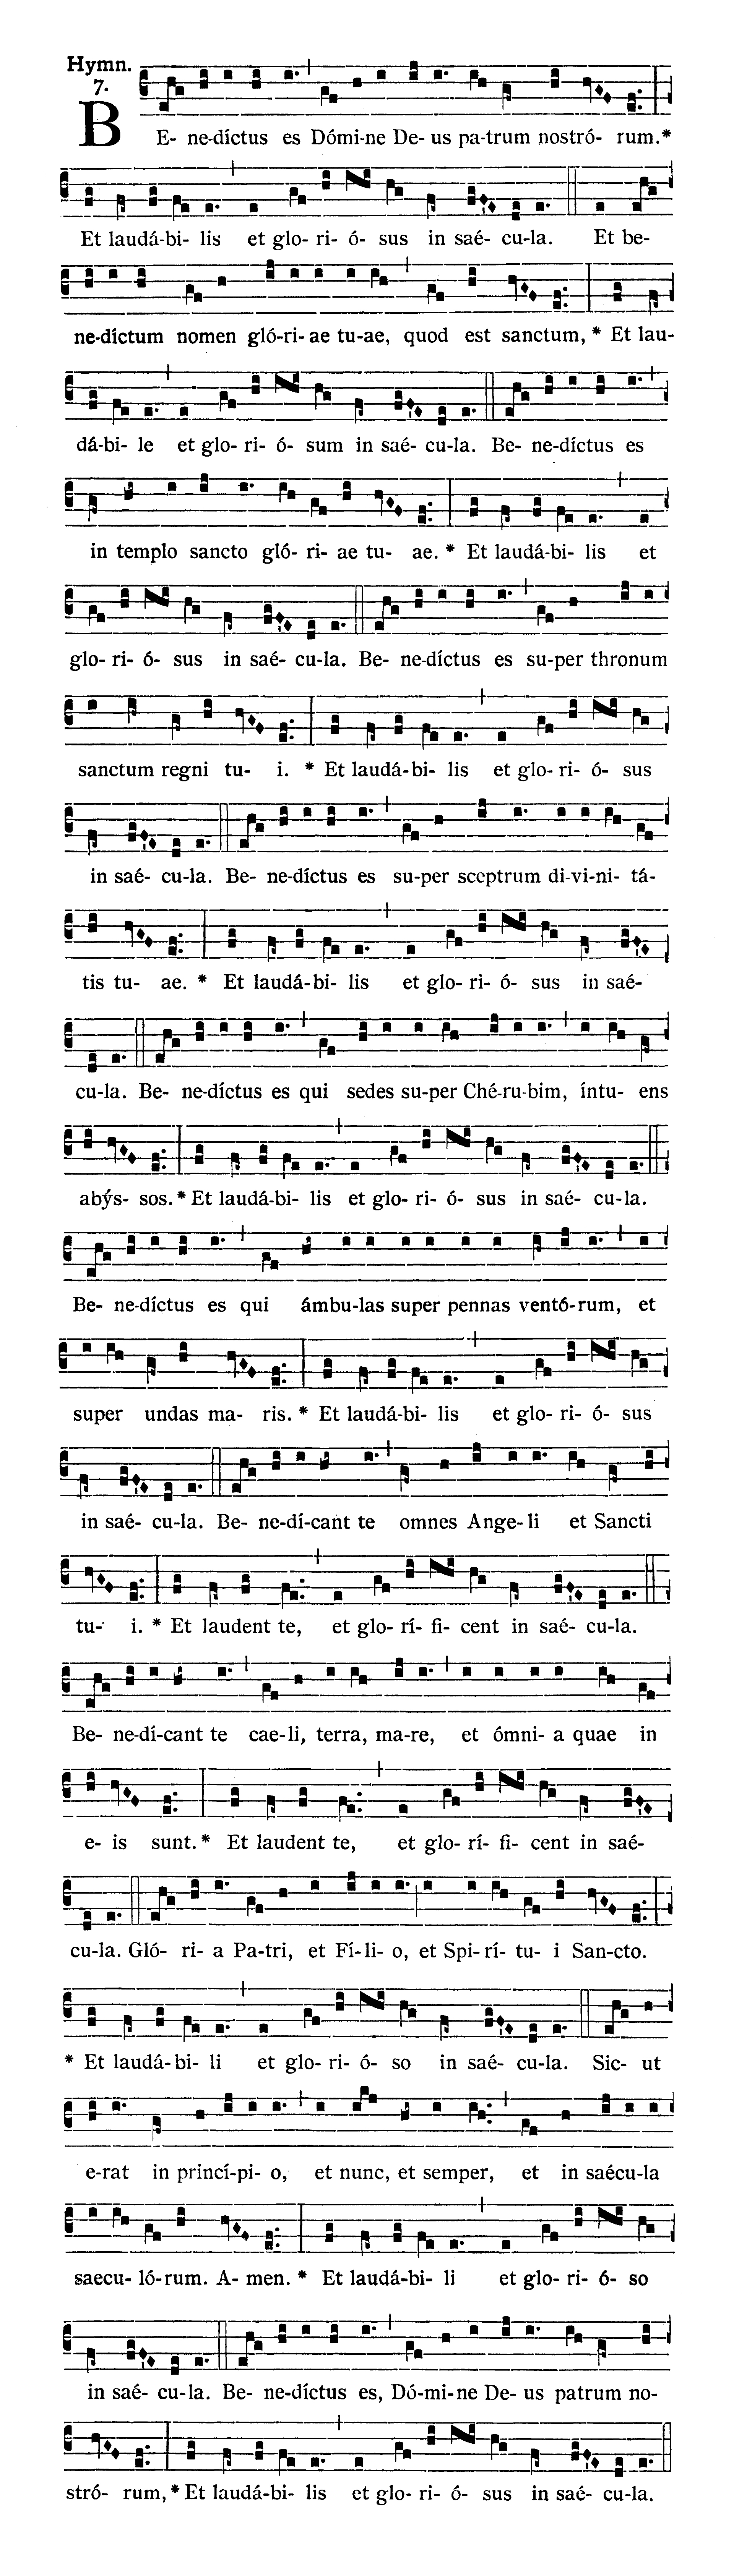 Sabbato Quatuor Temporum Septembris (Ember Saturday of September) - Hymnus (Benedictus es)